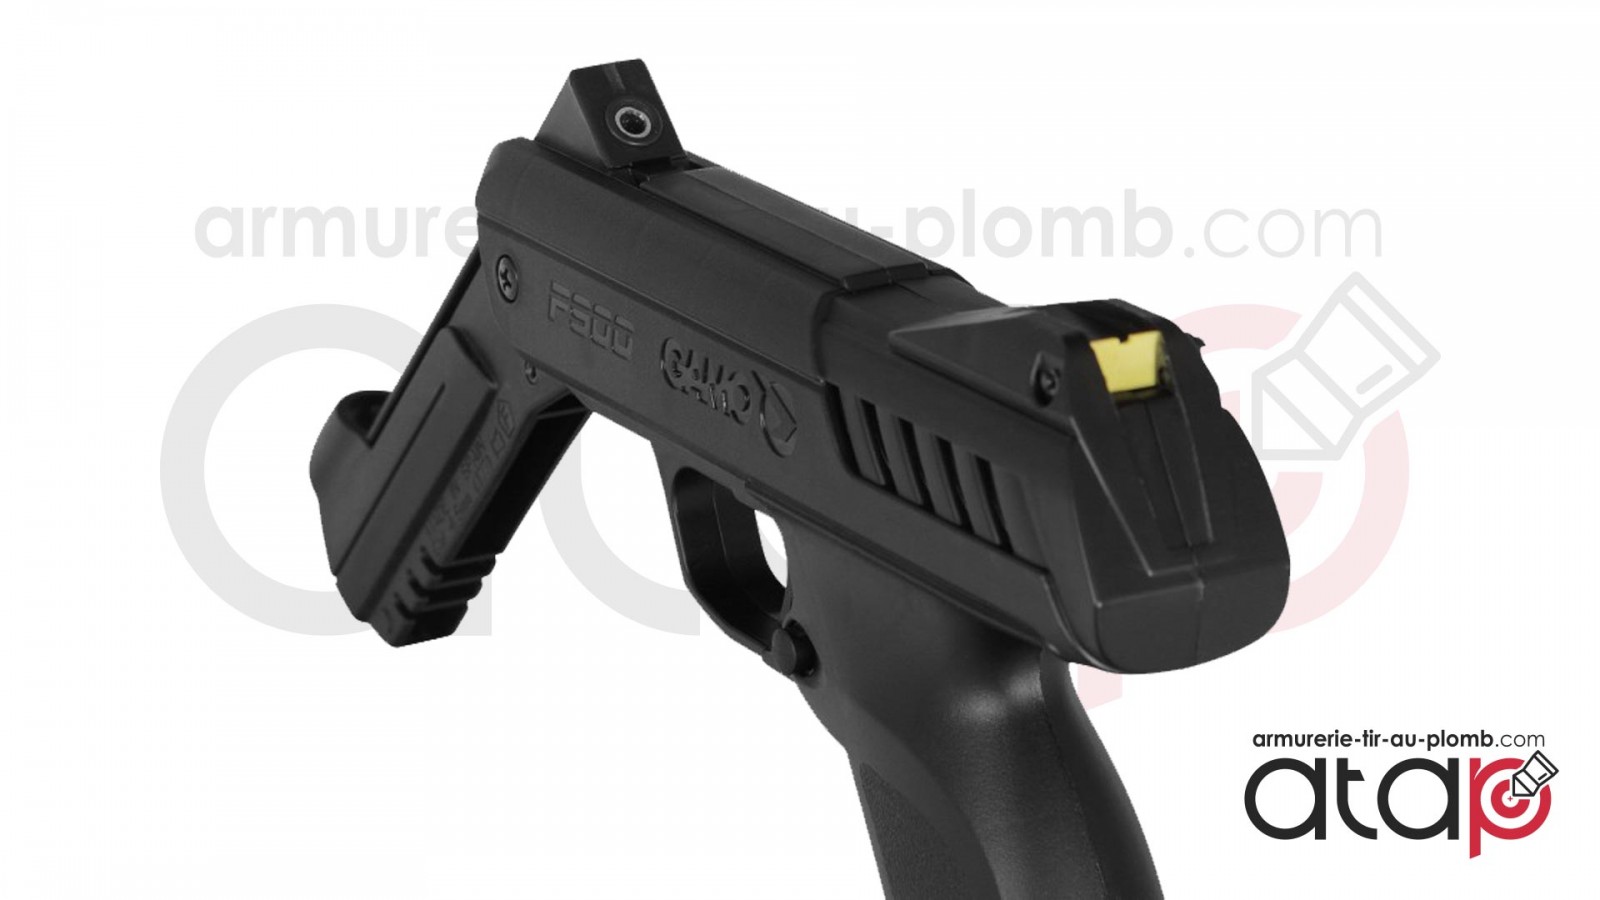 Pack pistolet à plombs Gamo P900 IGT 4,5mm - 3 joules